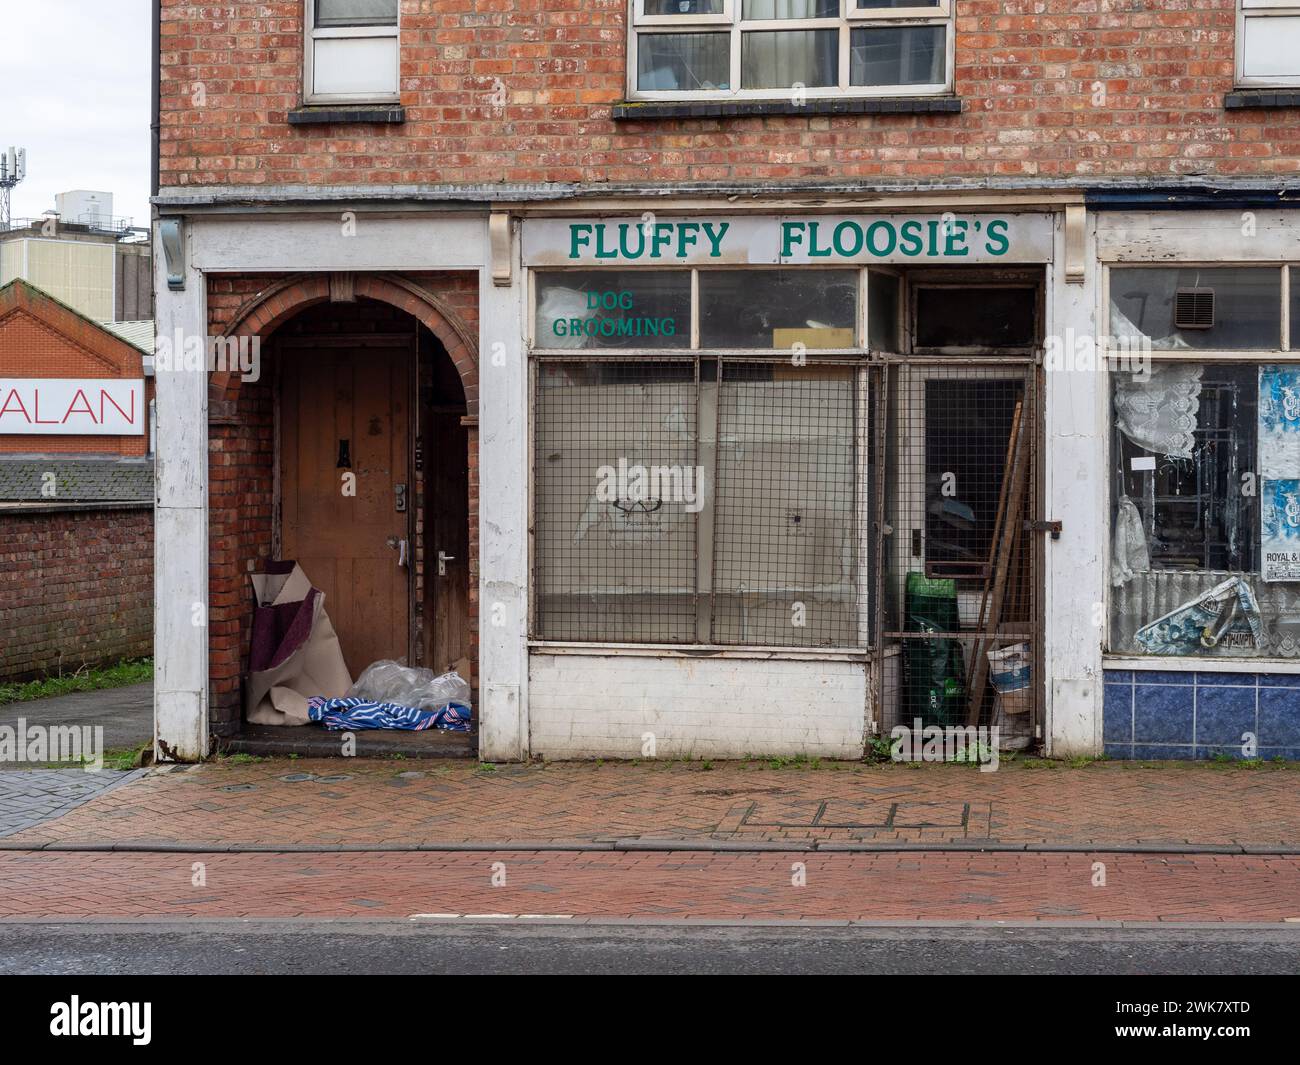 Negozio di derelict, Victoria St, Wellingborough, Regno Unito; ex soffice salottino per cani Floozies. Foto Stock